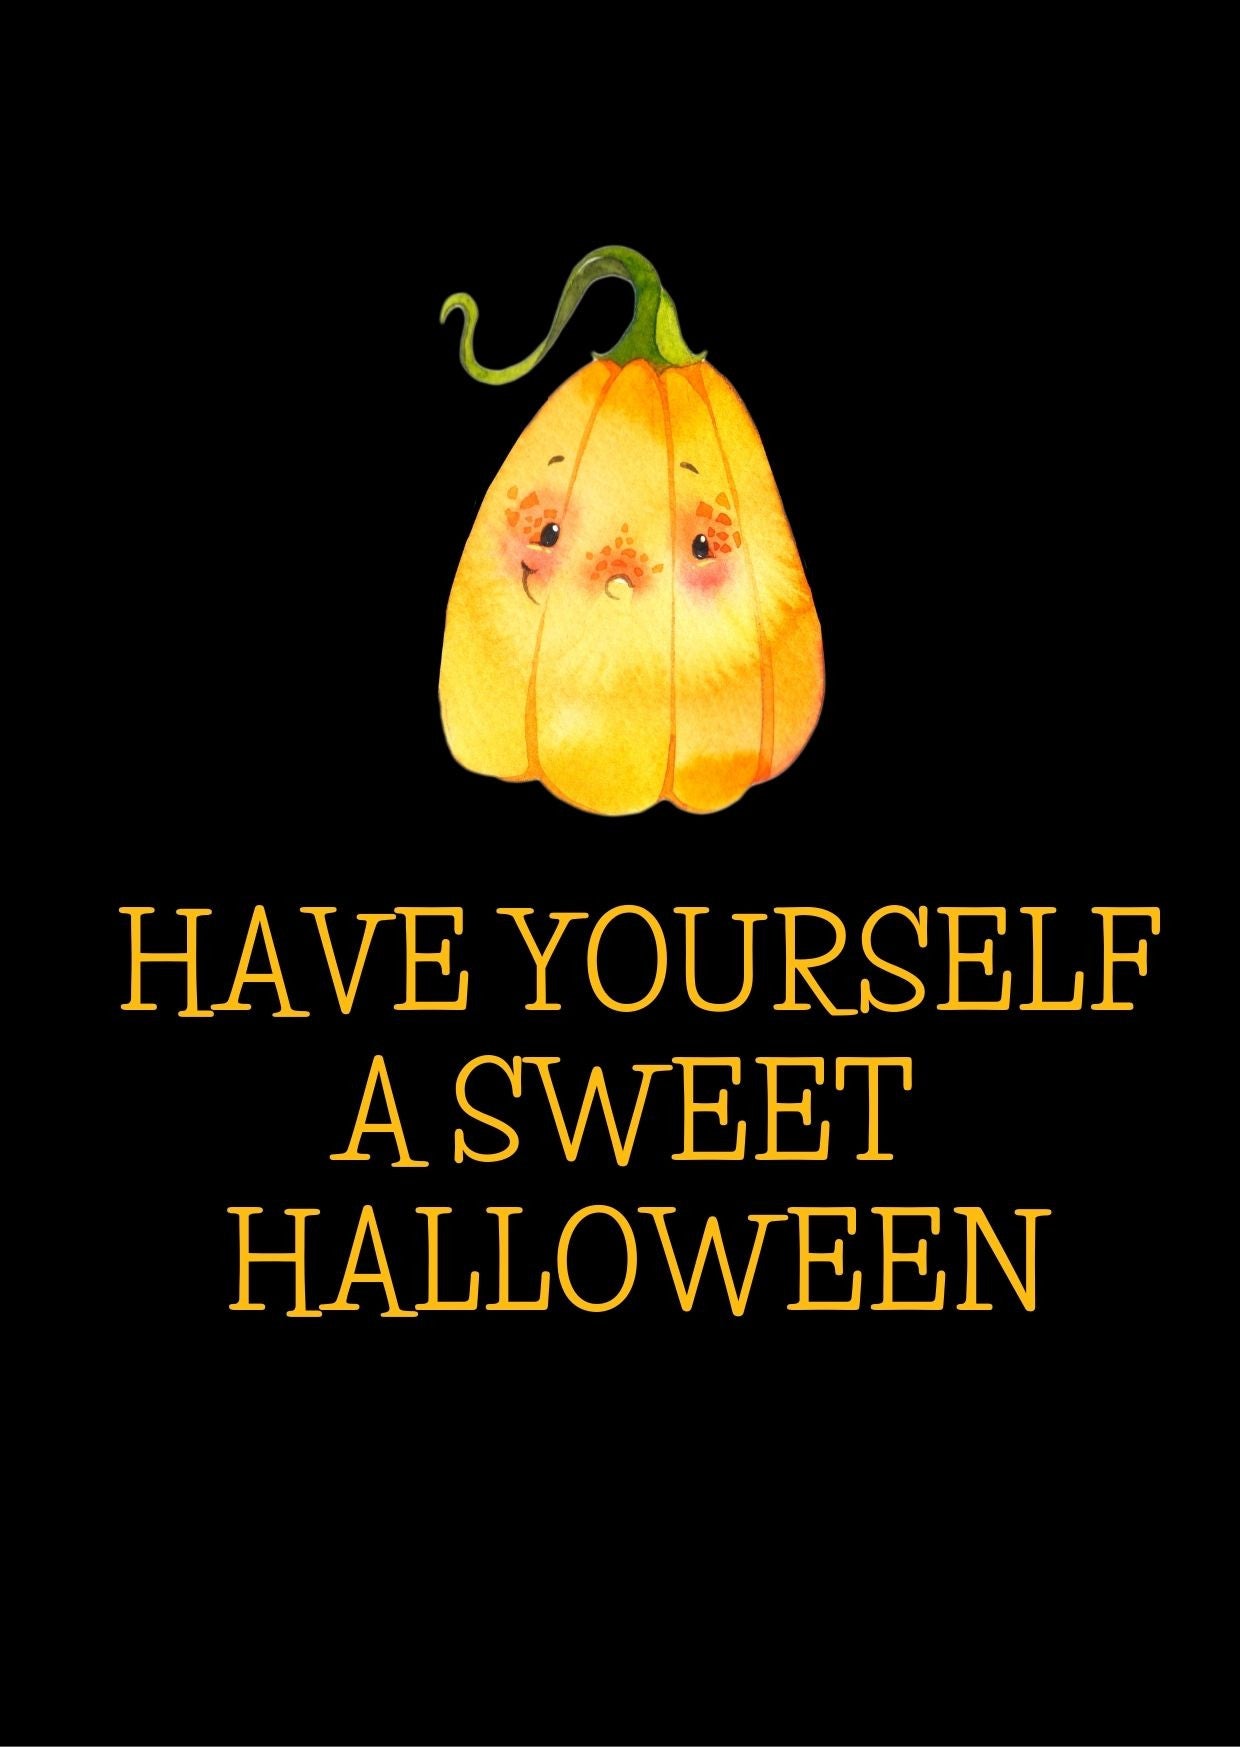 Sweet halloween Pompoen| Halloween collectie 2021 Fripperies